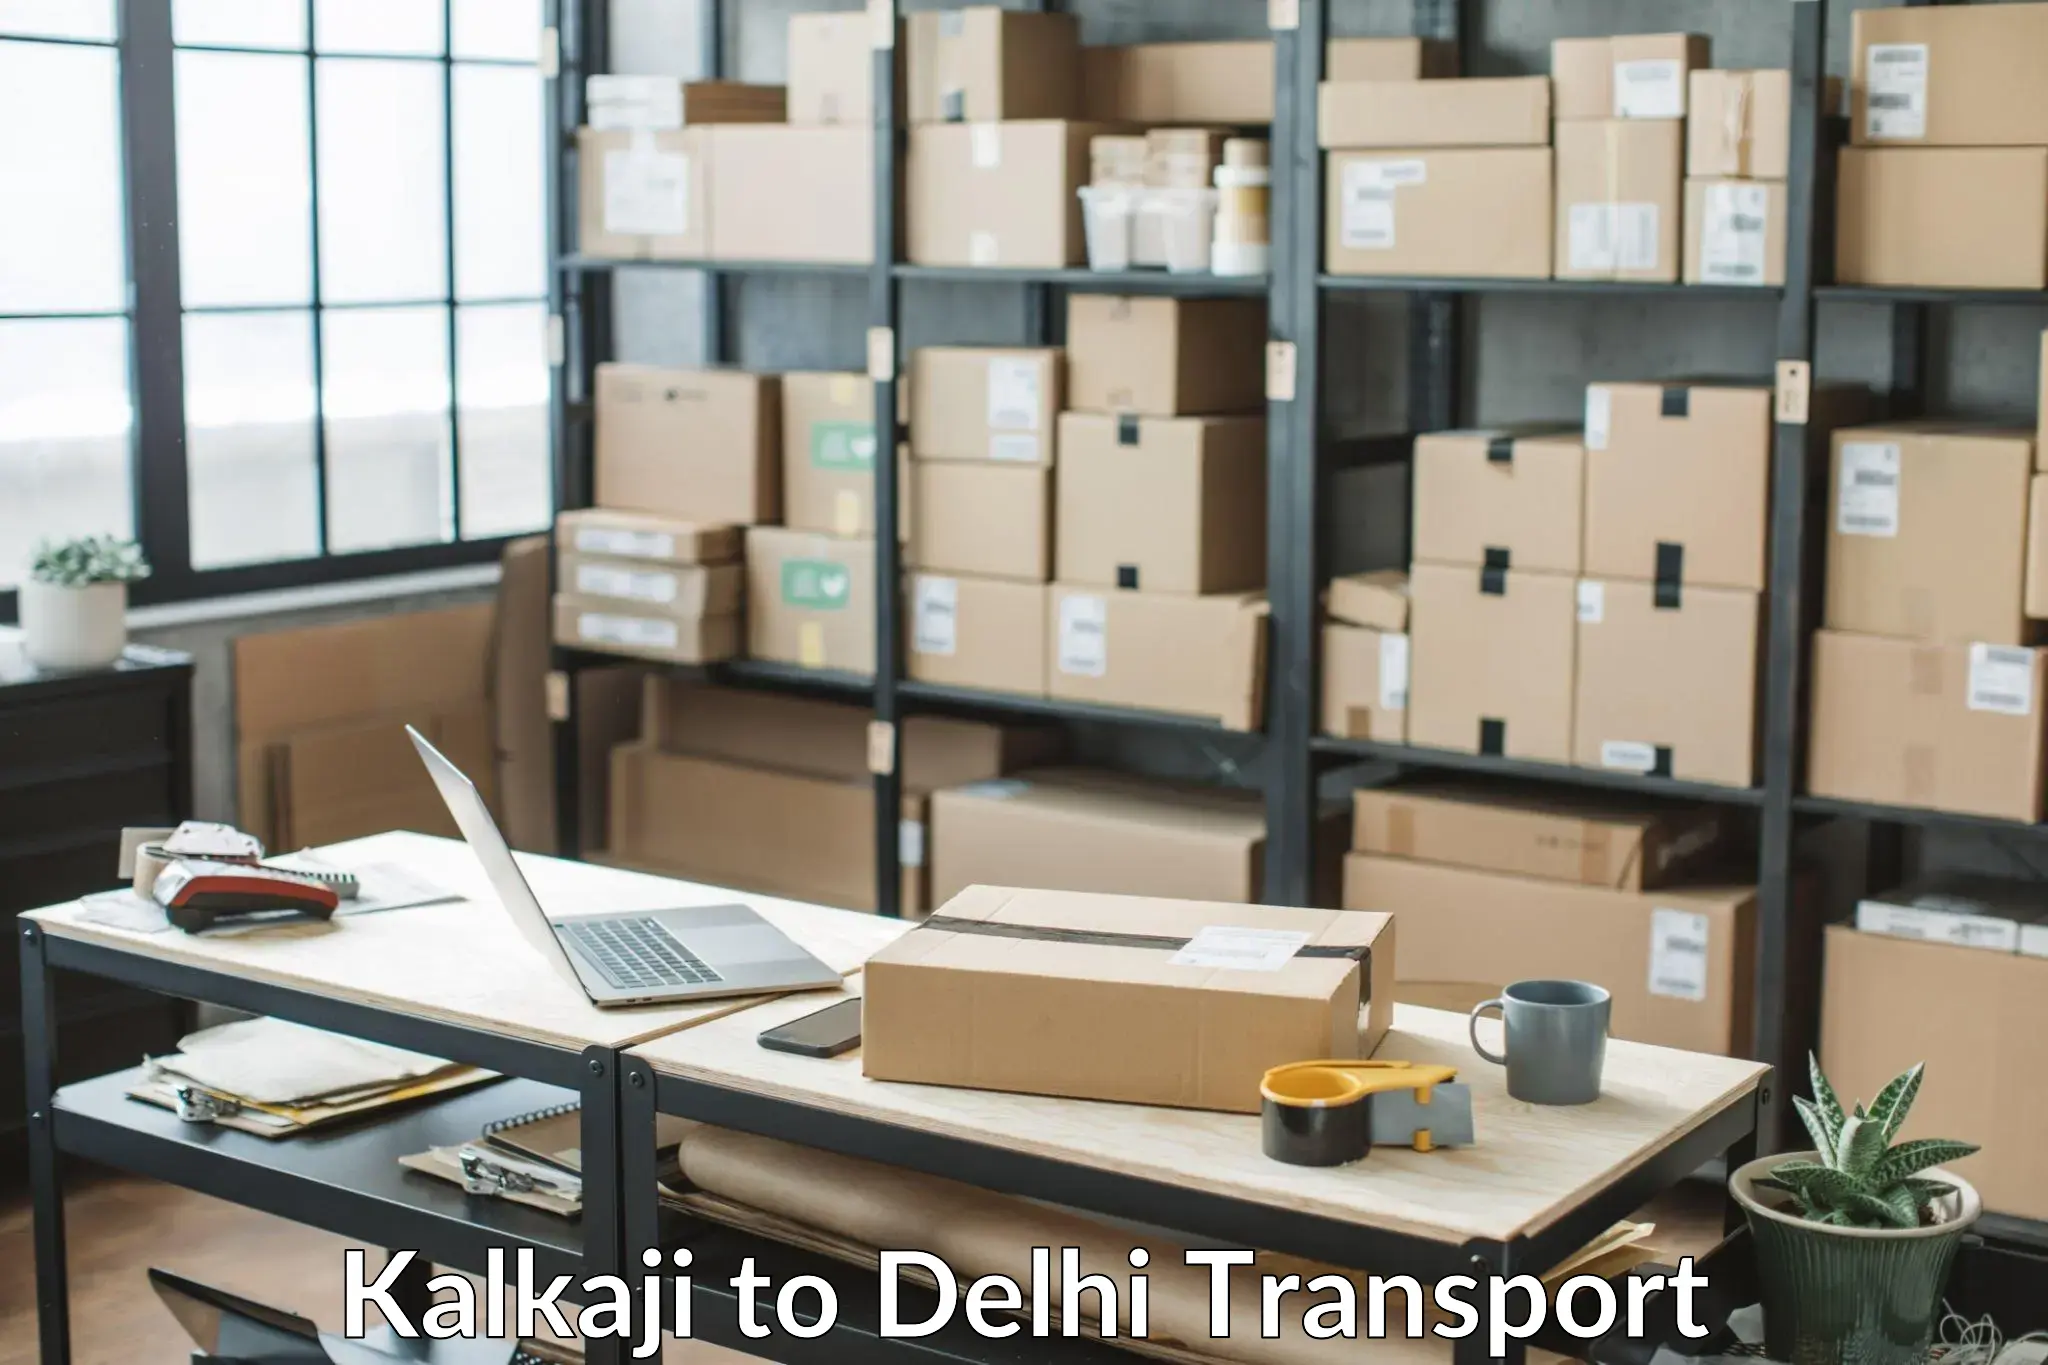 Commercial transport service Kalkaji to Lodhi Road